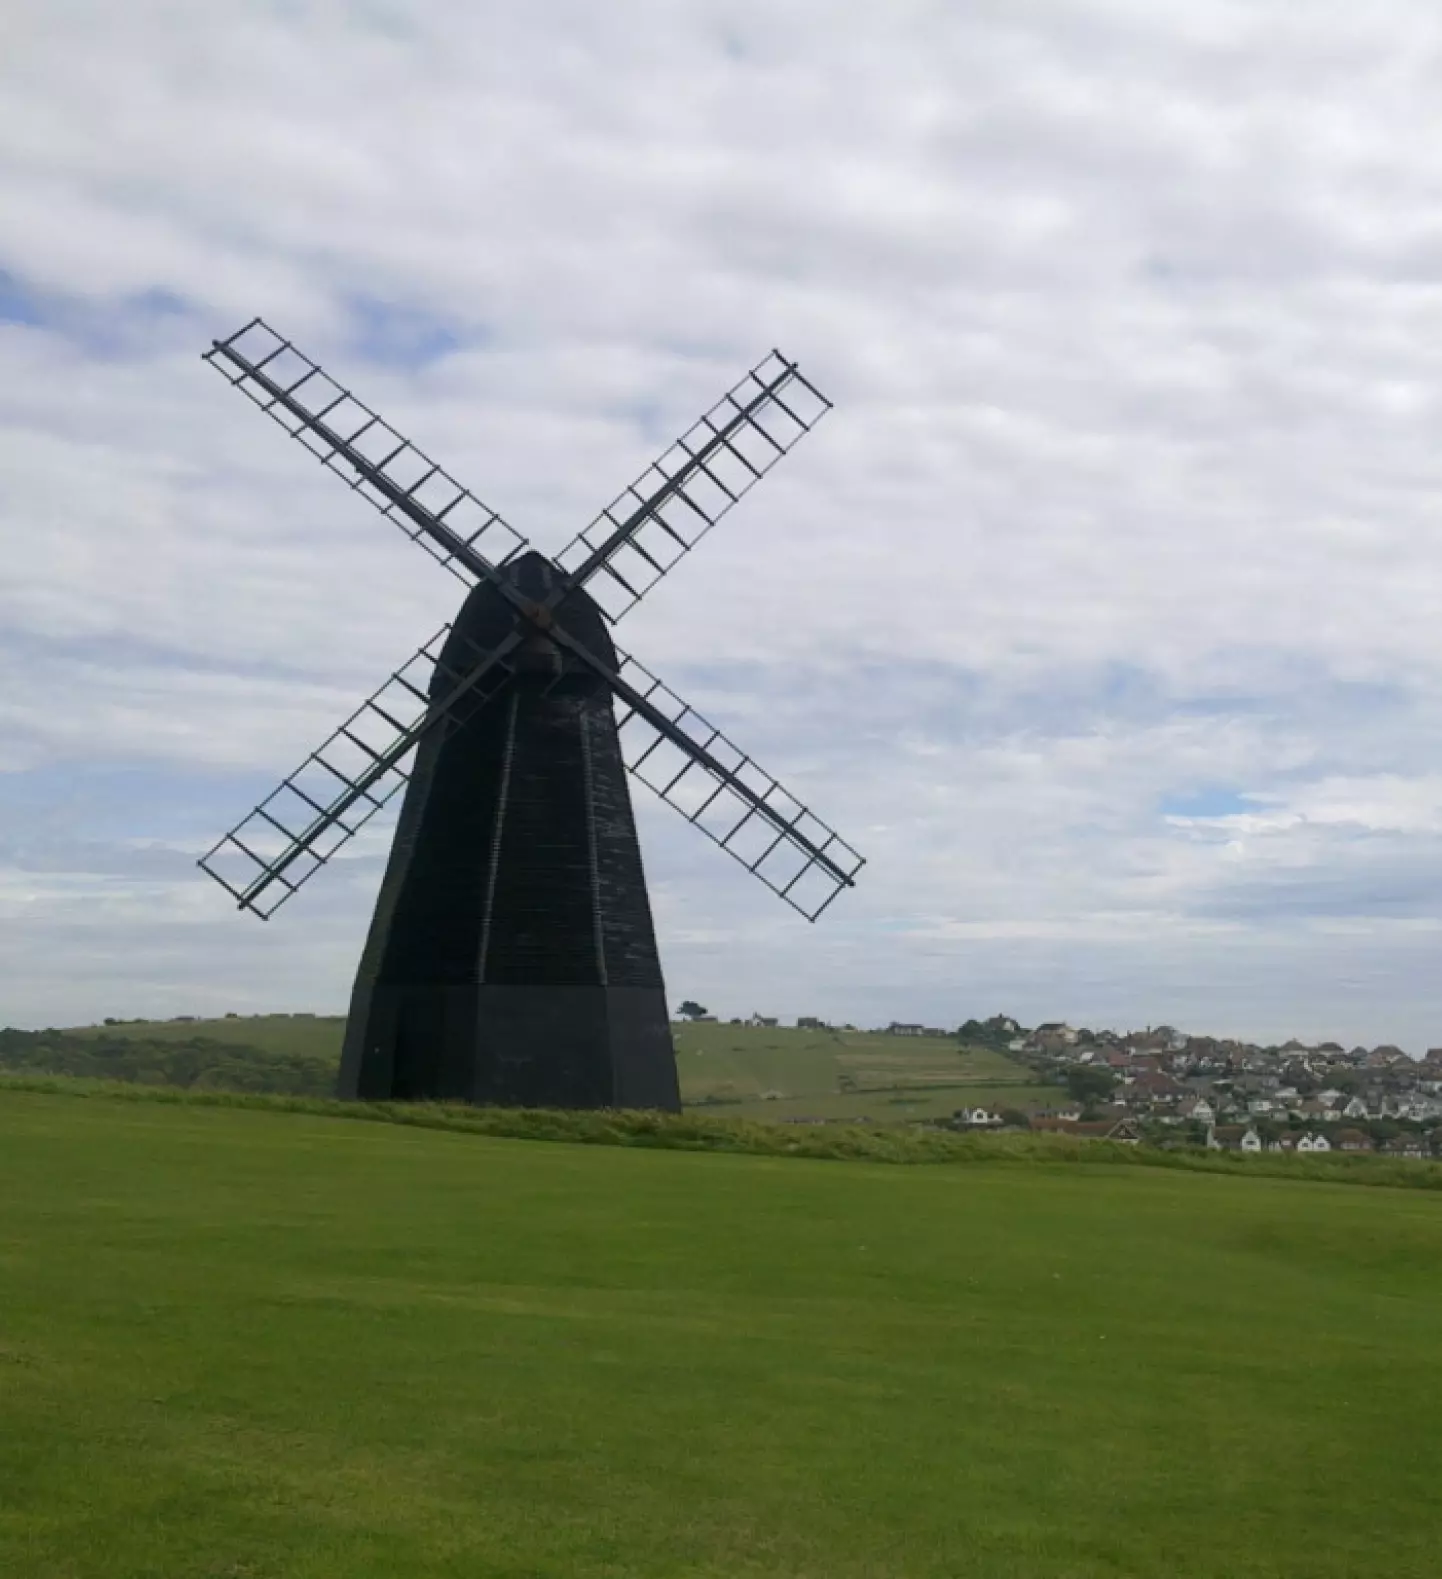 a windmill in a grassy field